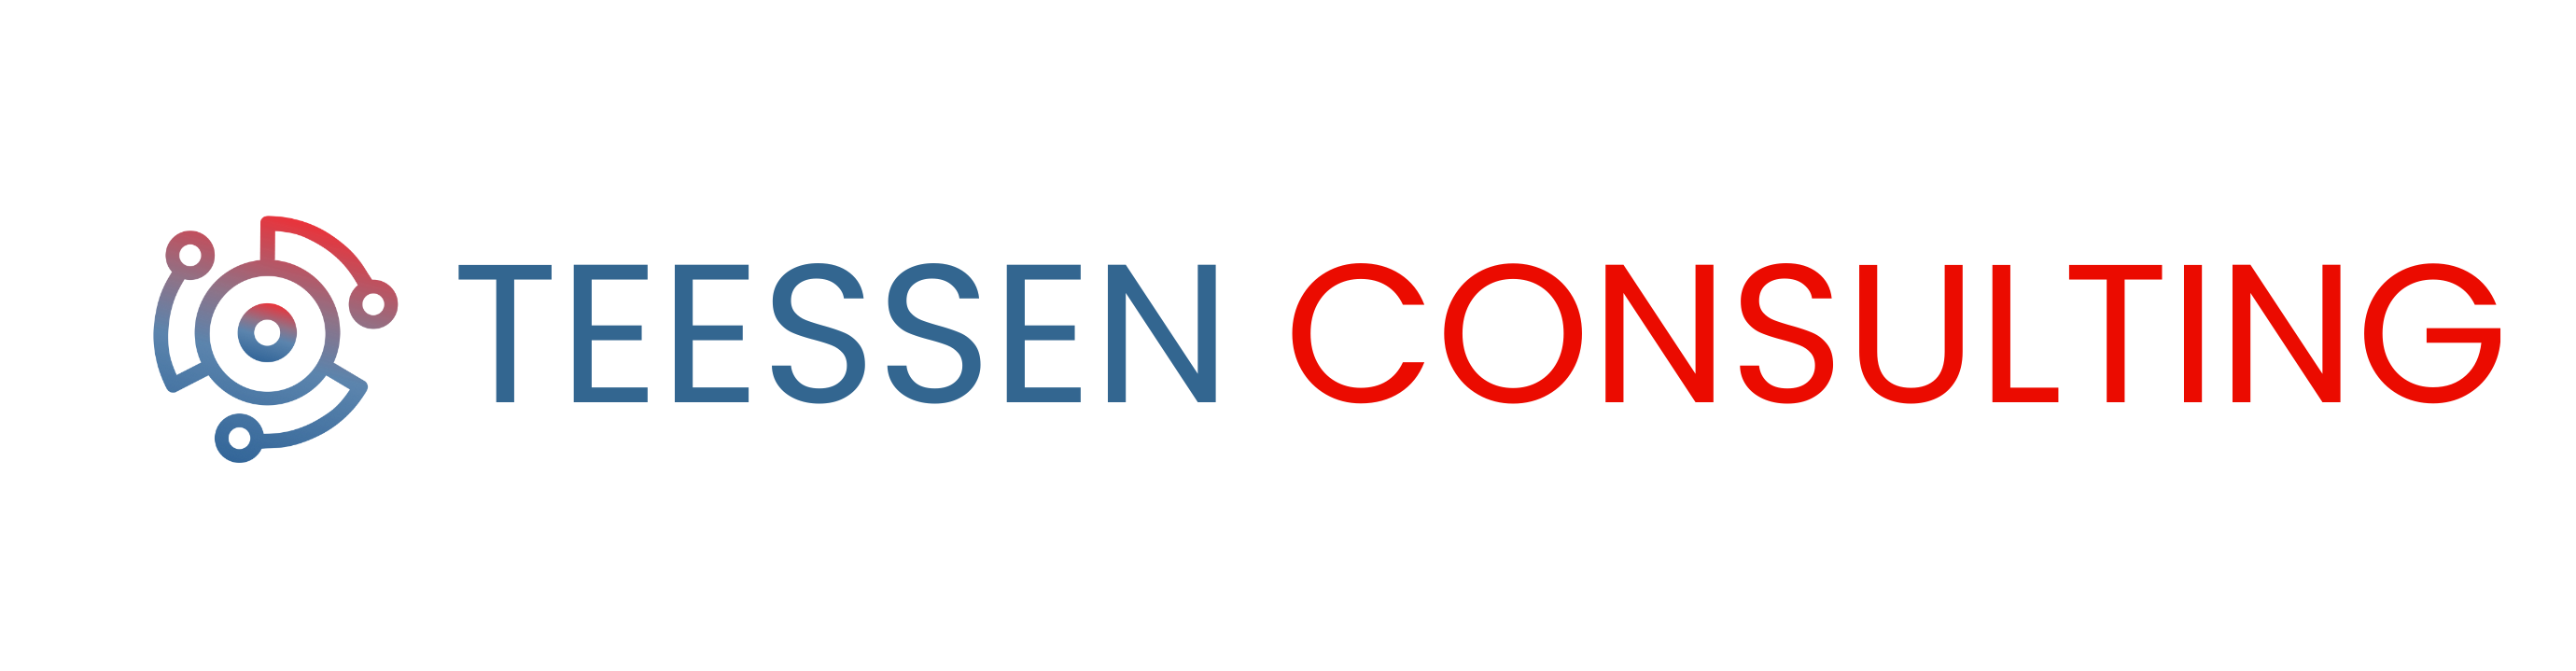 Teessen Consulting Logo